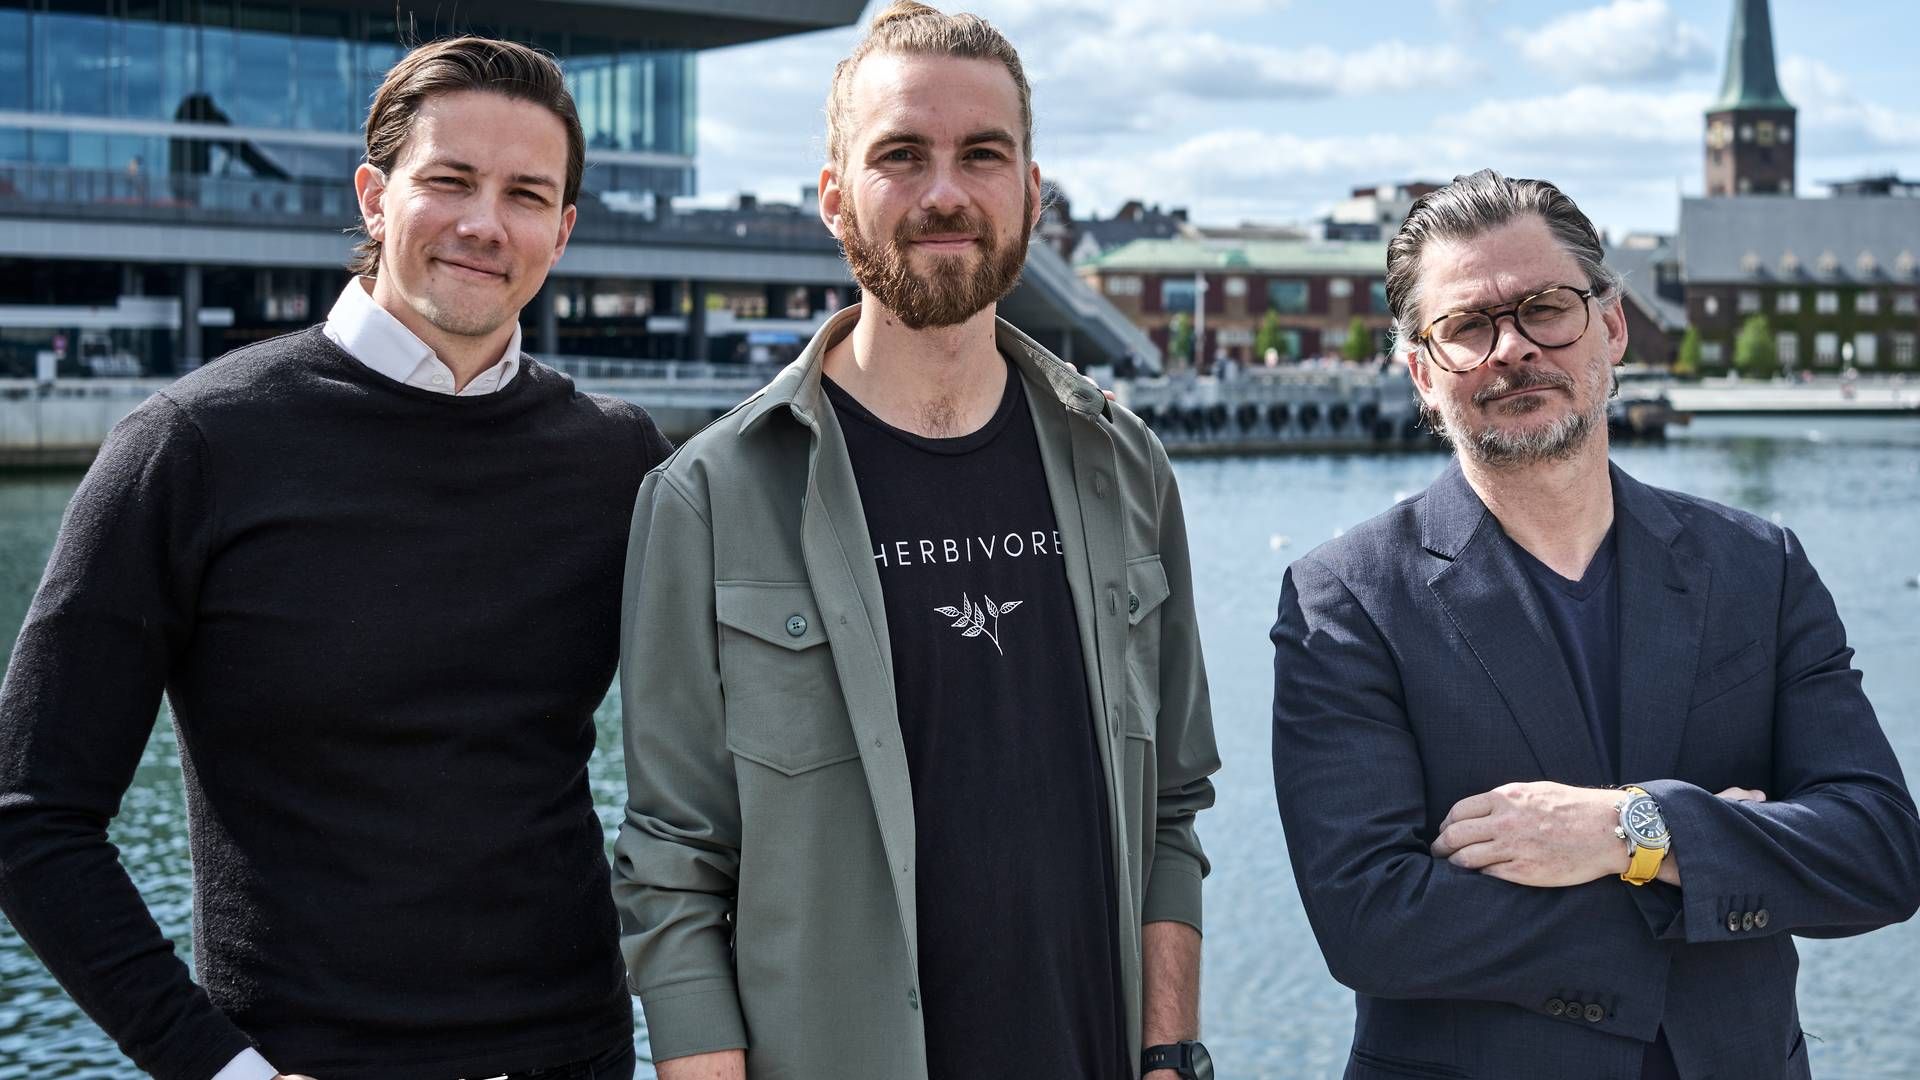 Fra venstre ses Jacob Vorsø Pedersen, Christian Thisted og Chris Albert Pedersen. Sidstnævnte er direktør og medejer i Fellow Pay. | Foto: PR / Ray Løvschall